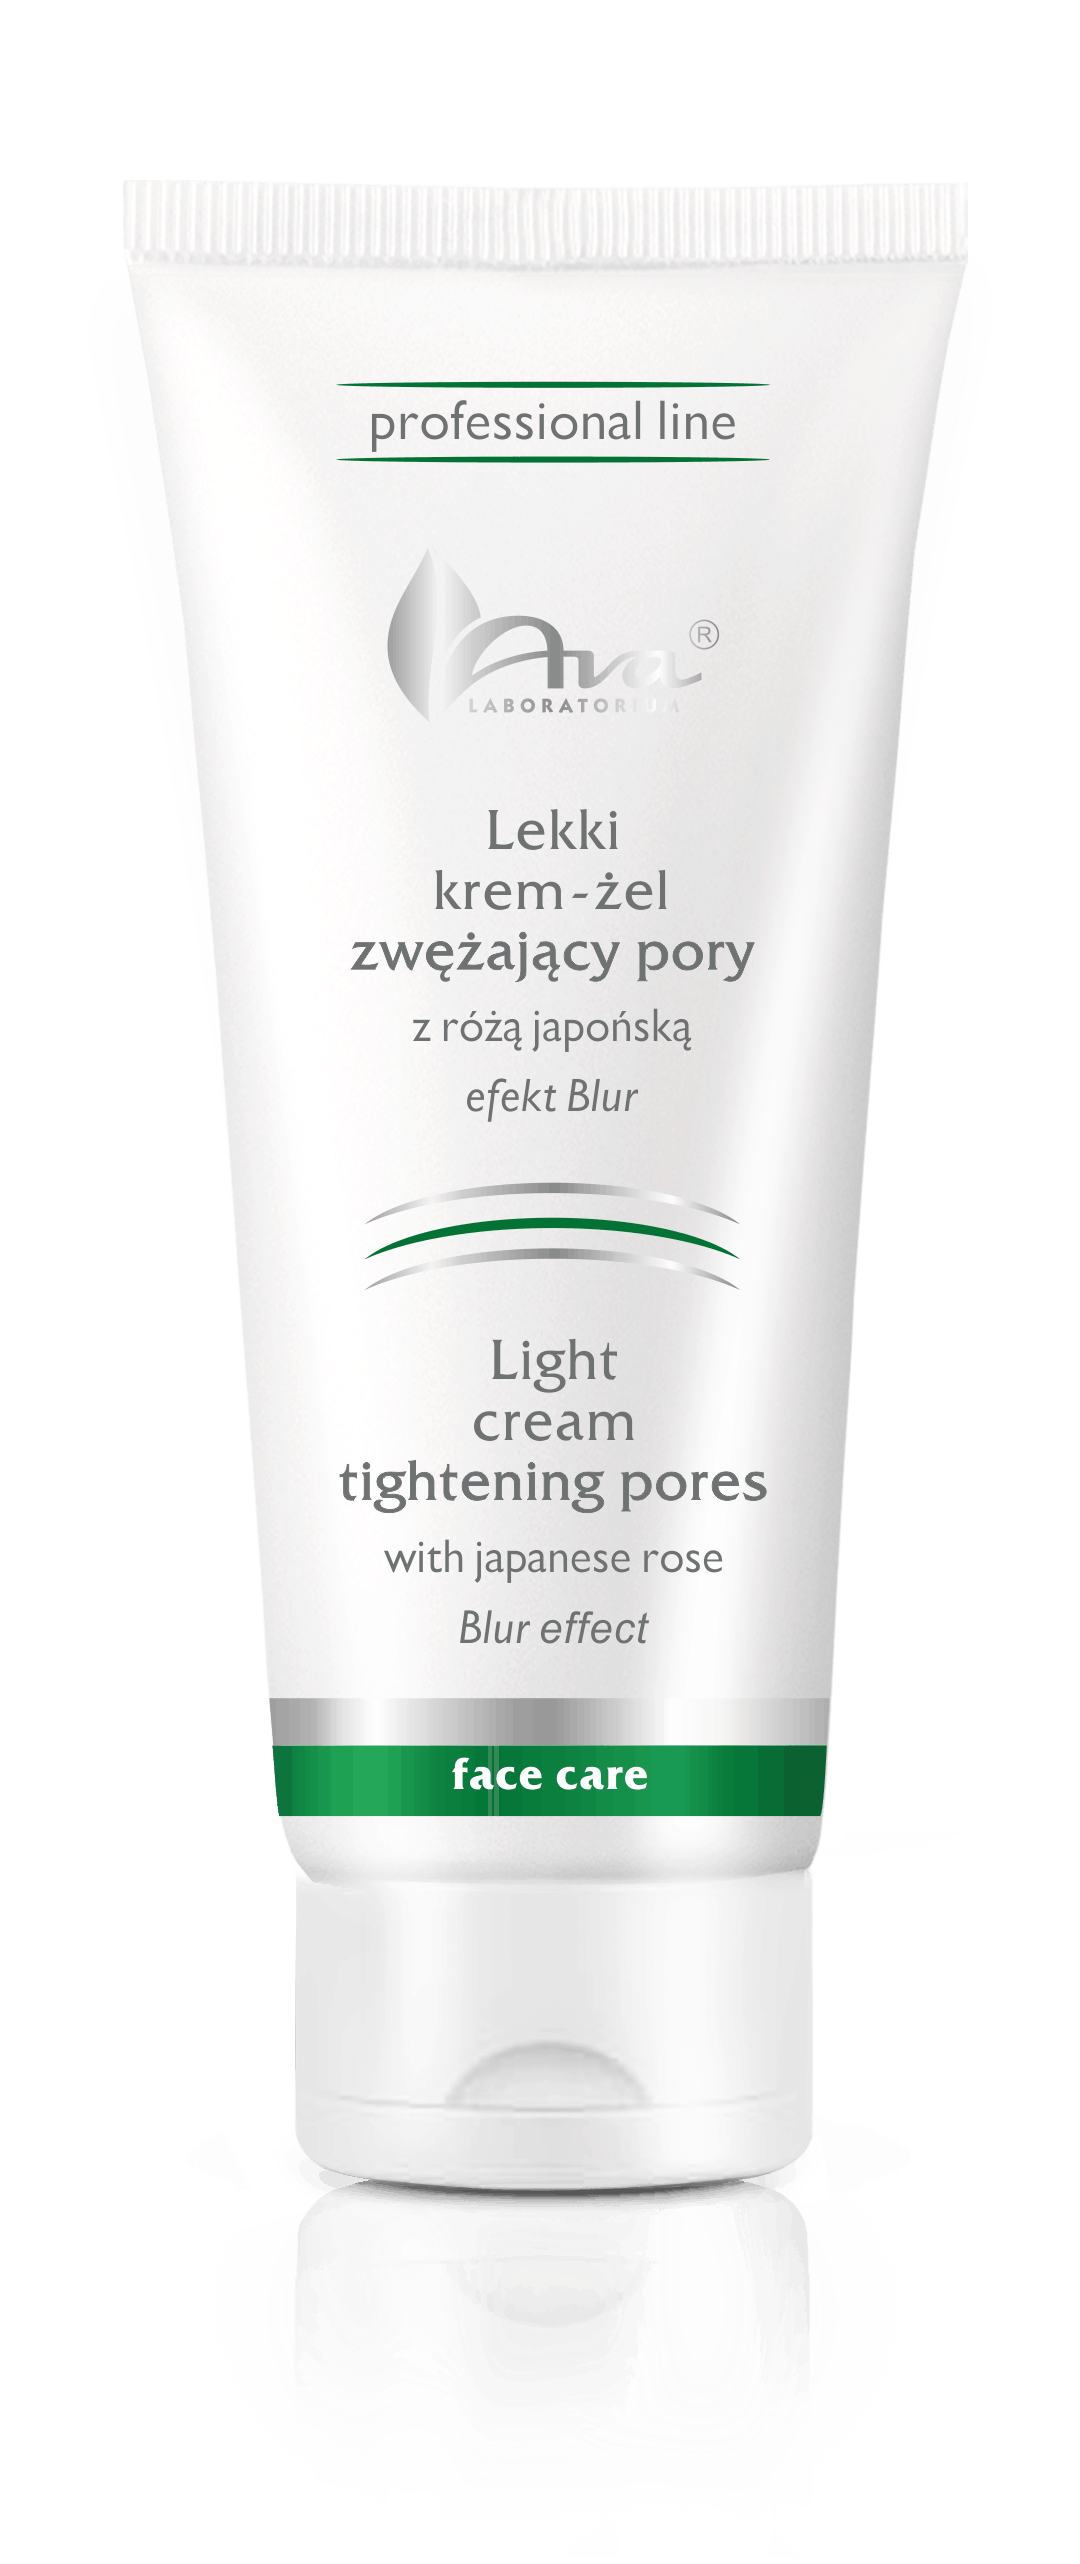 Light cream tightening pores